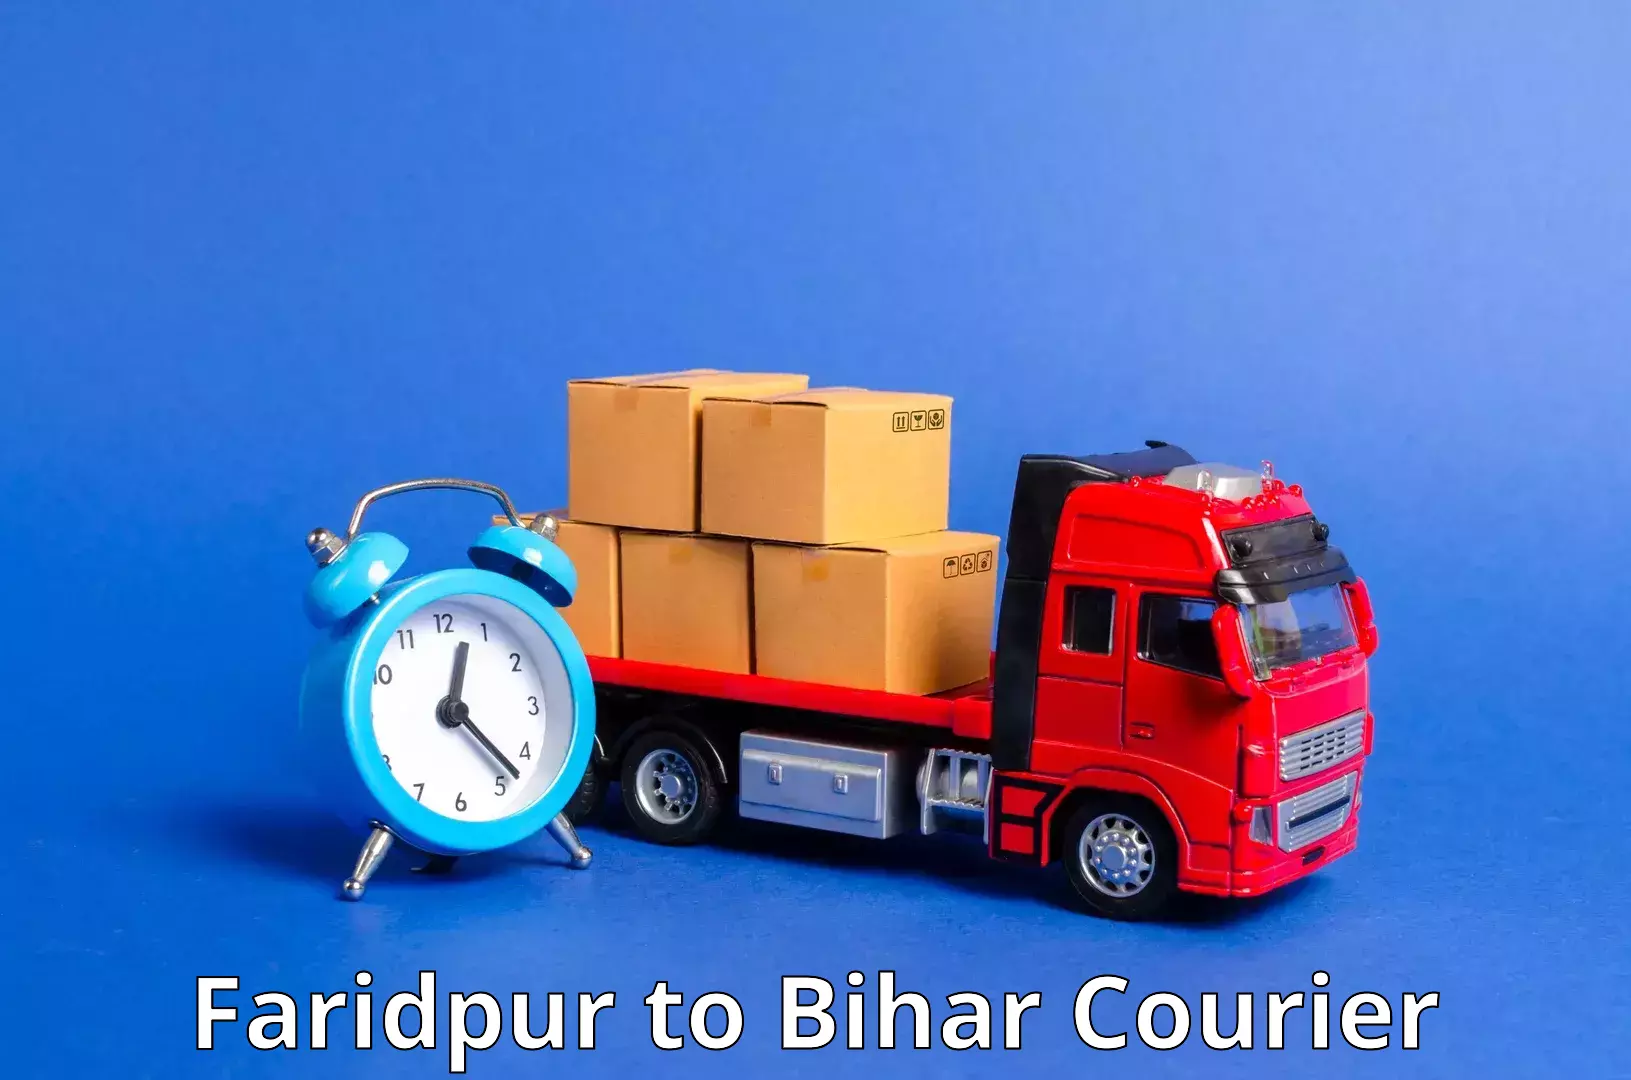 Air courier services in Faridpur to Jagdishpur Bhojpur